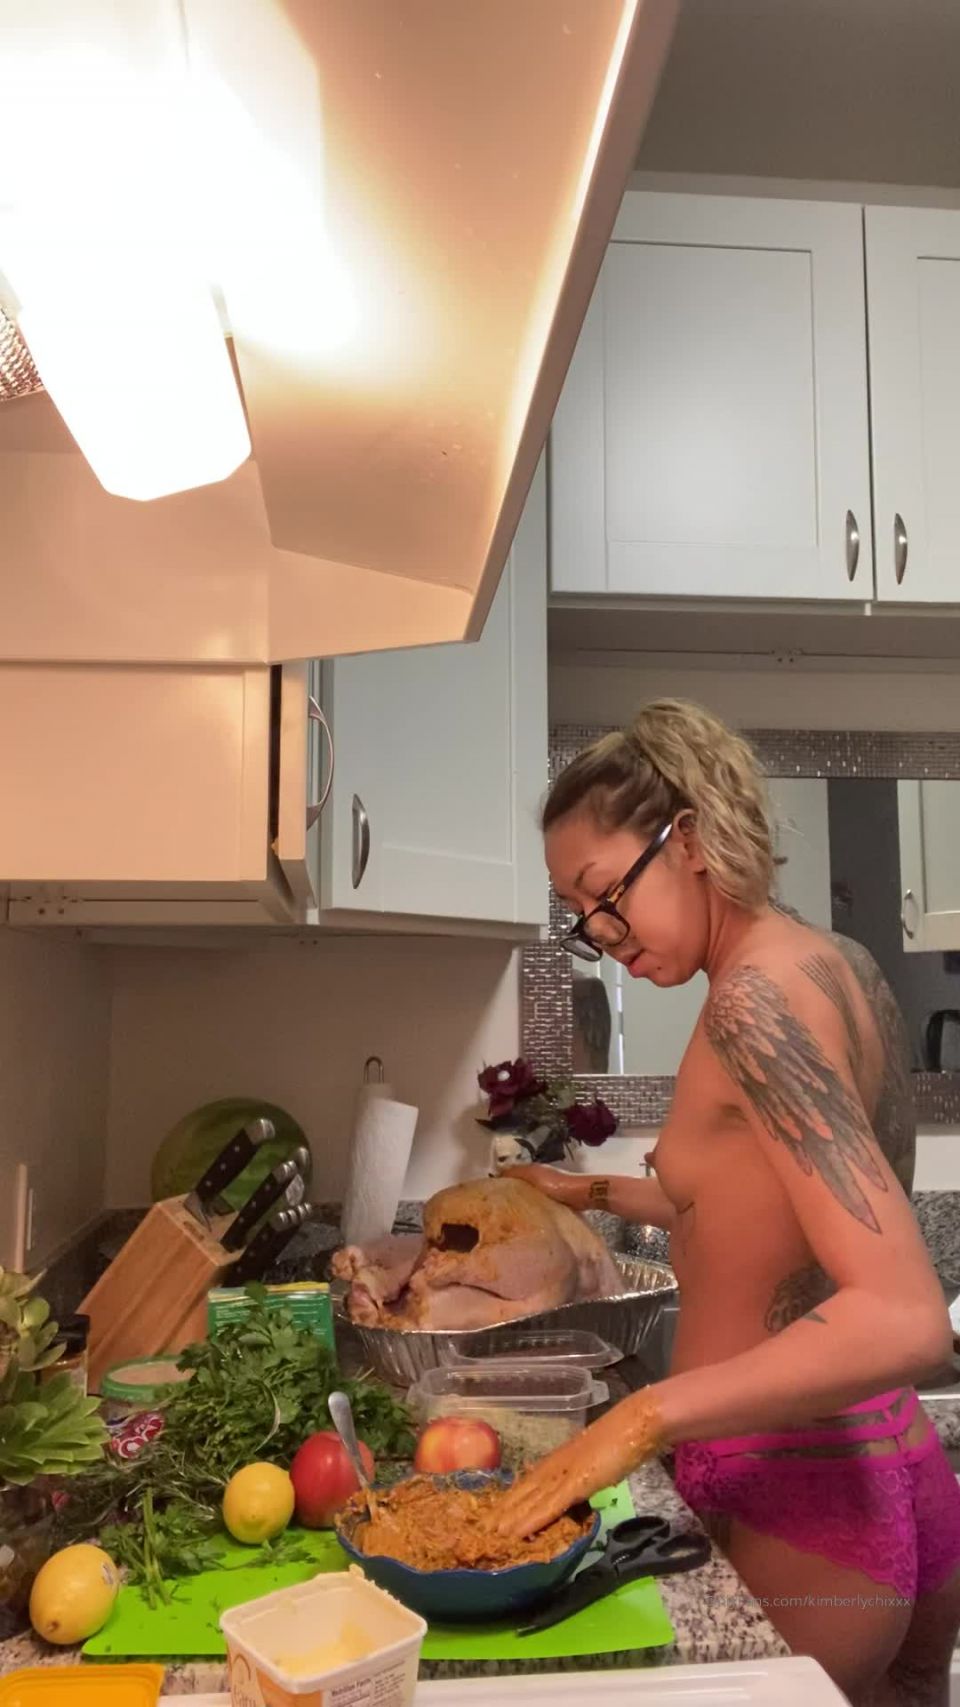 Kimberlychi - kimberlychixxx () Kimberlychixxx - me cooking my turkey topless 11-12-2019